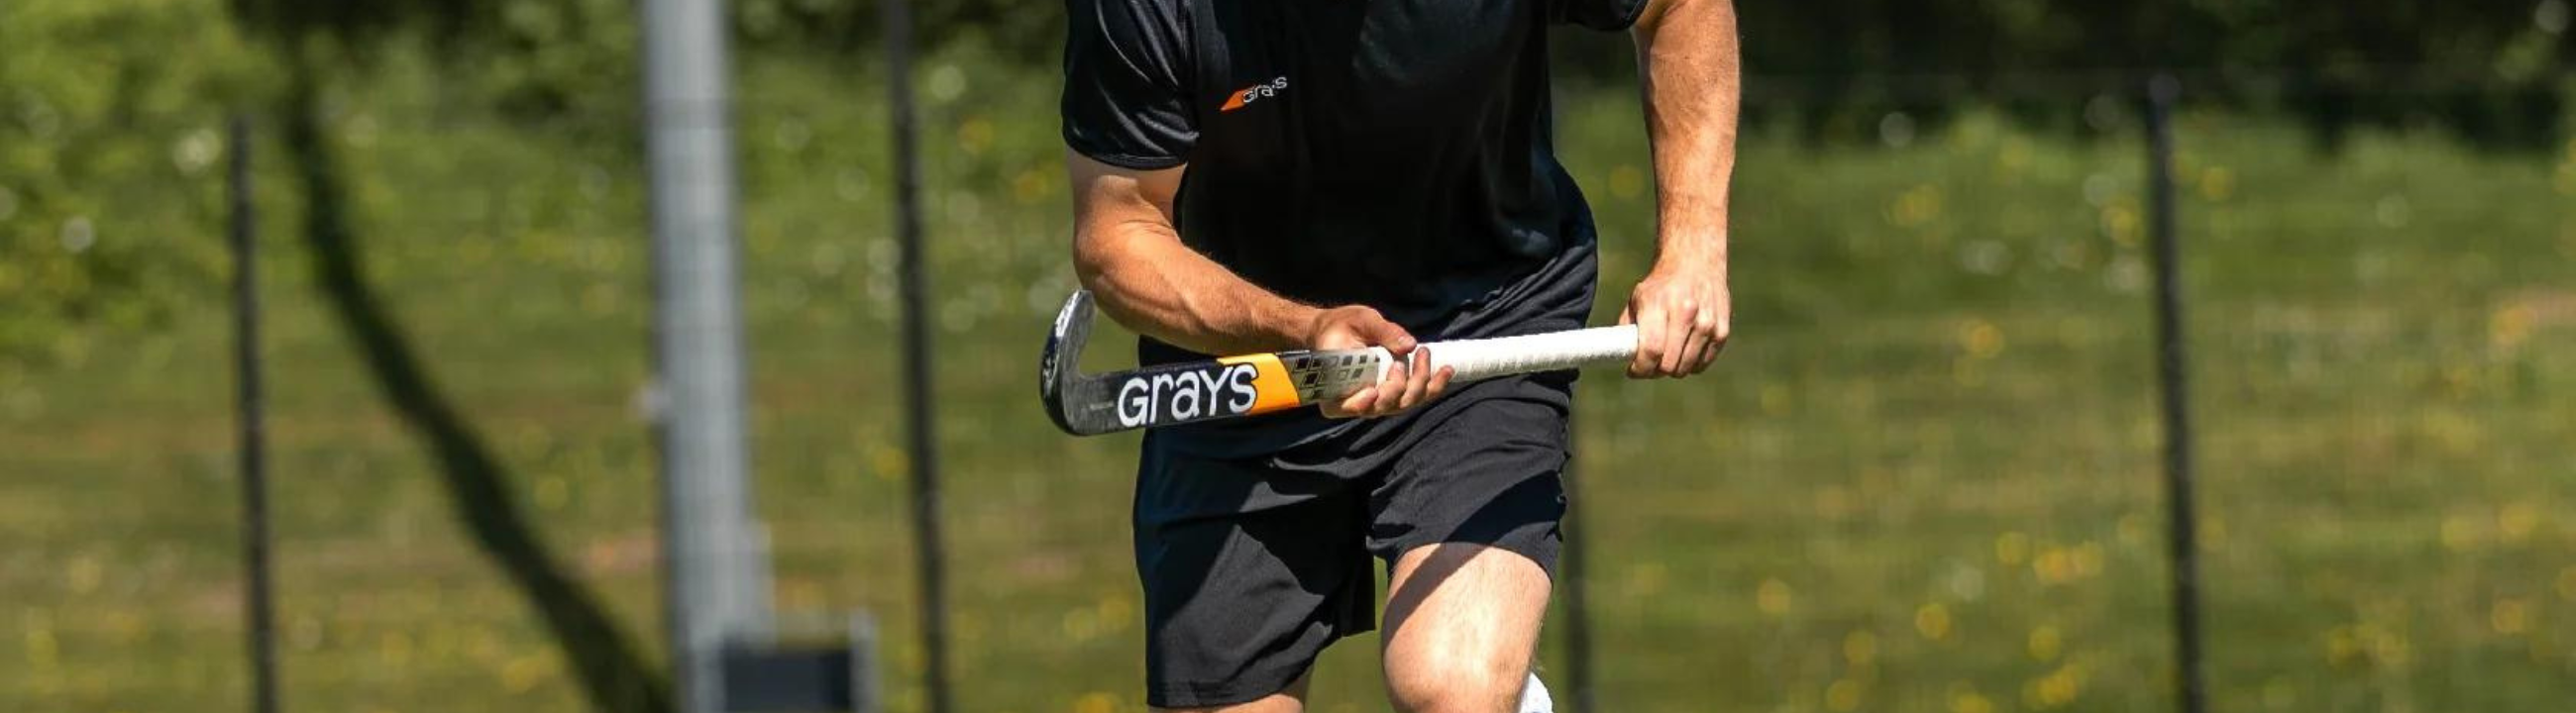 Grays GX Hockey Stick Range